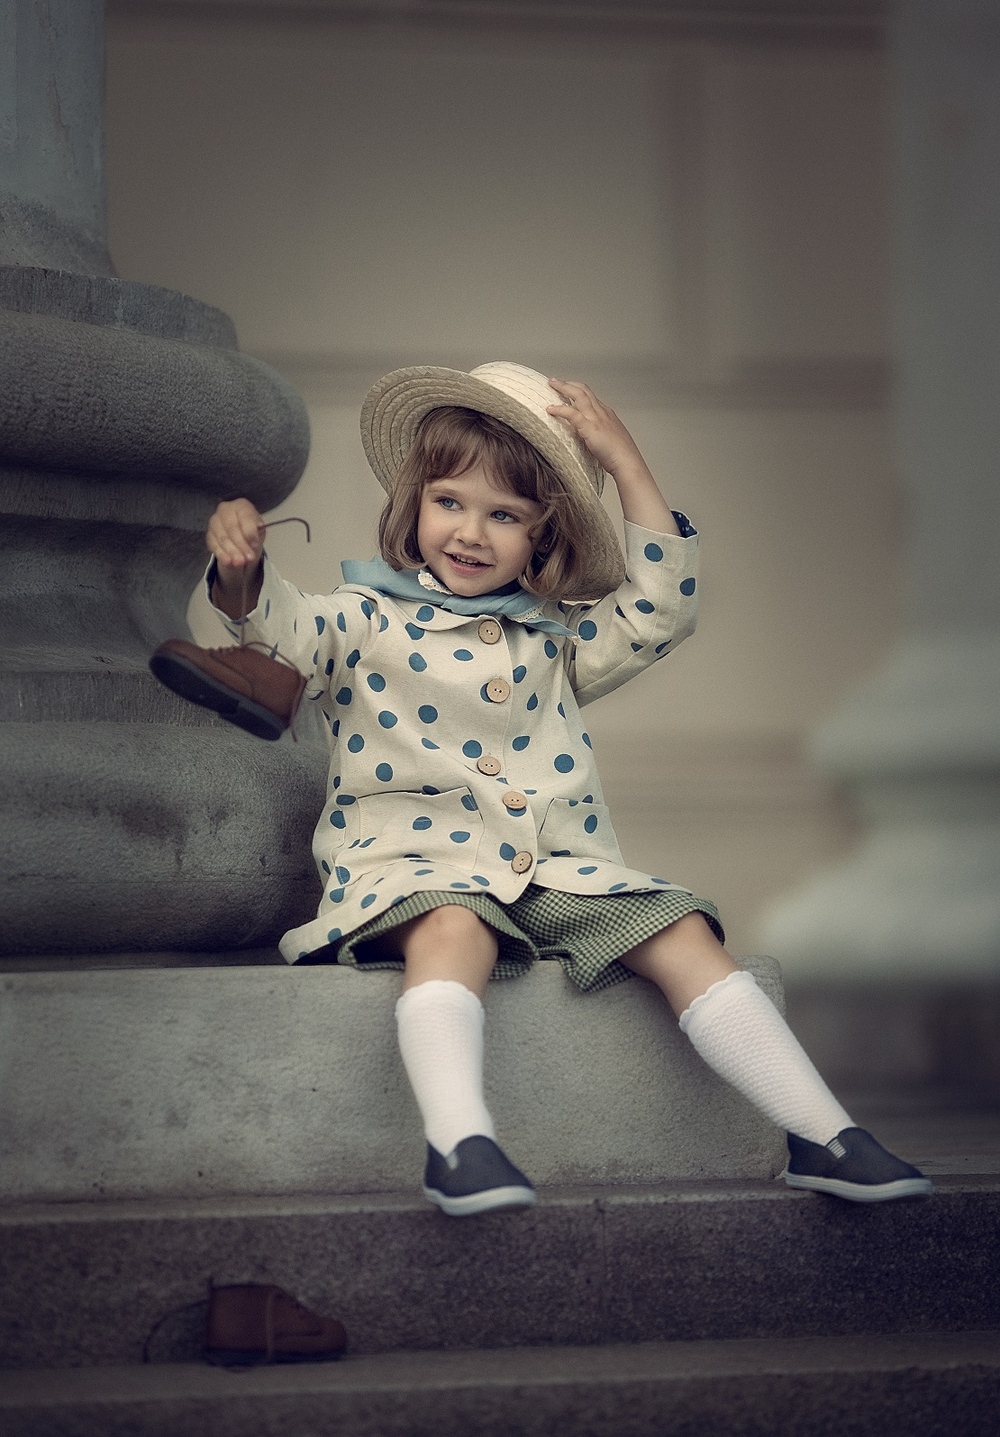 Каталог - Детская одежда Petite Princesse